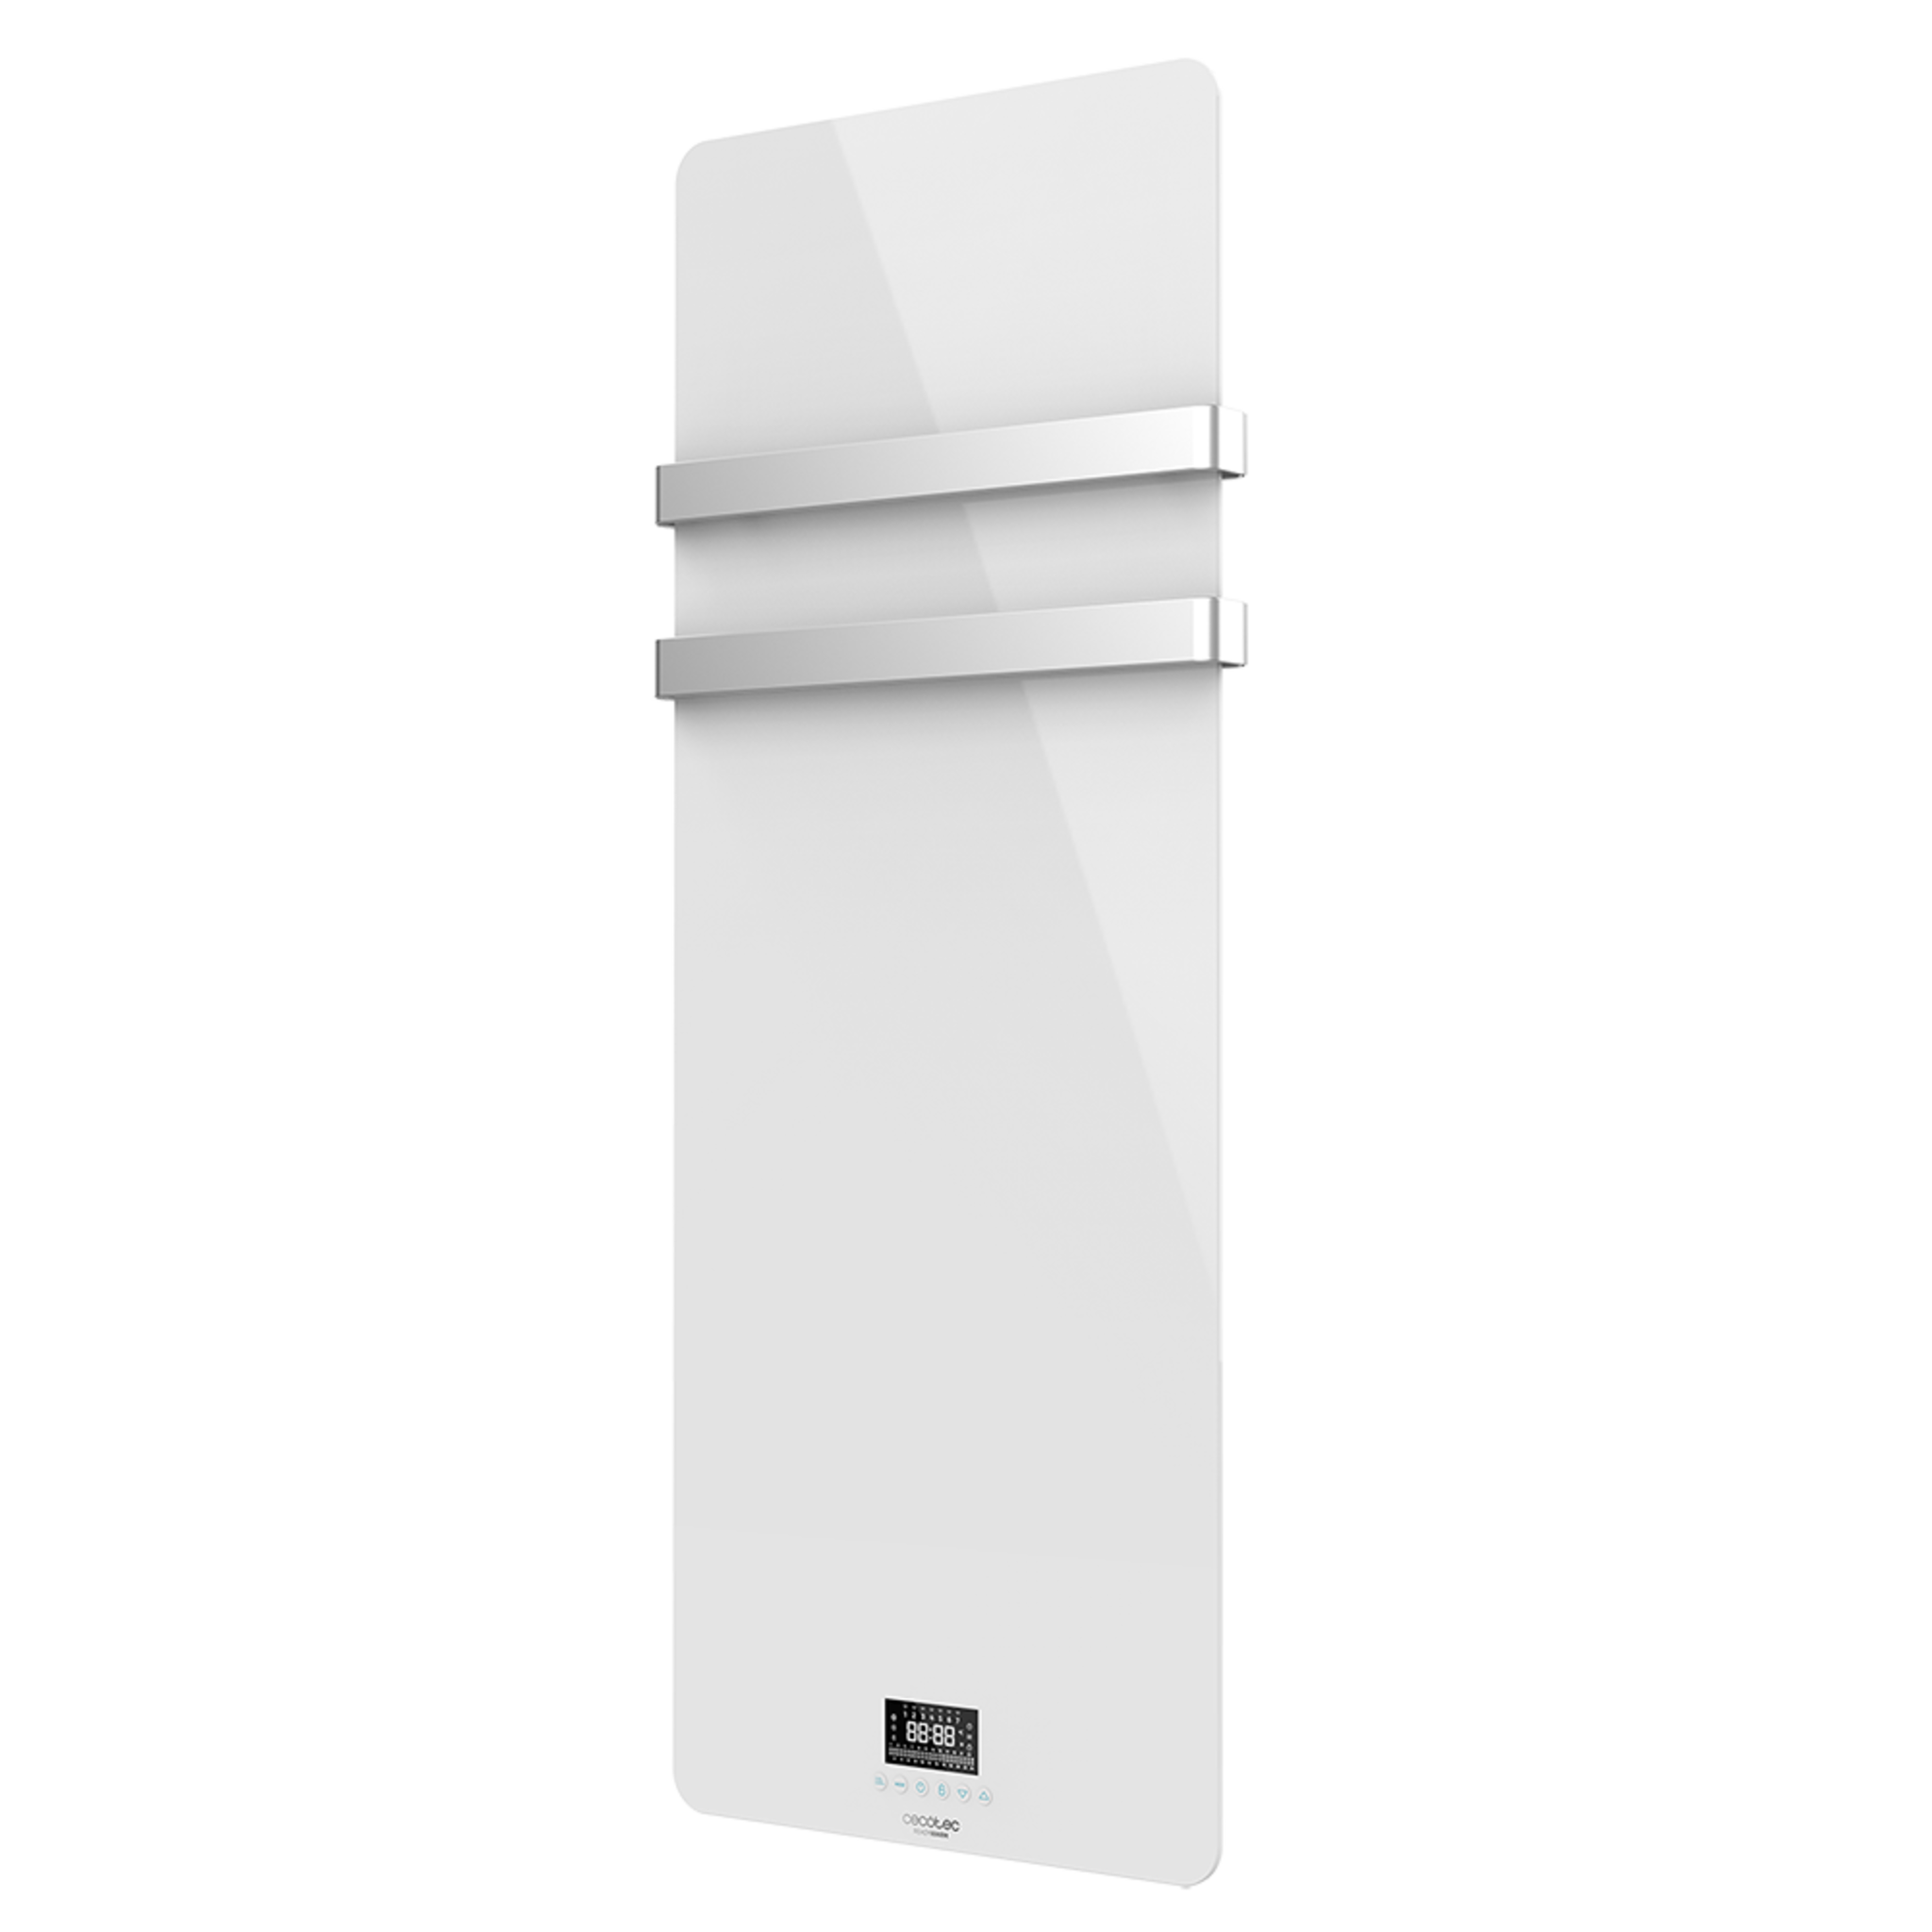 Sèche-serviettes électrique à faible consommation Ready Warm 9870 Crystal Towel White. 850W, écran LED, double étendoir en acier inoxydable, minuterie hebdomadaire, télécommande et protection IP24